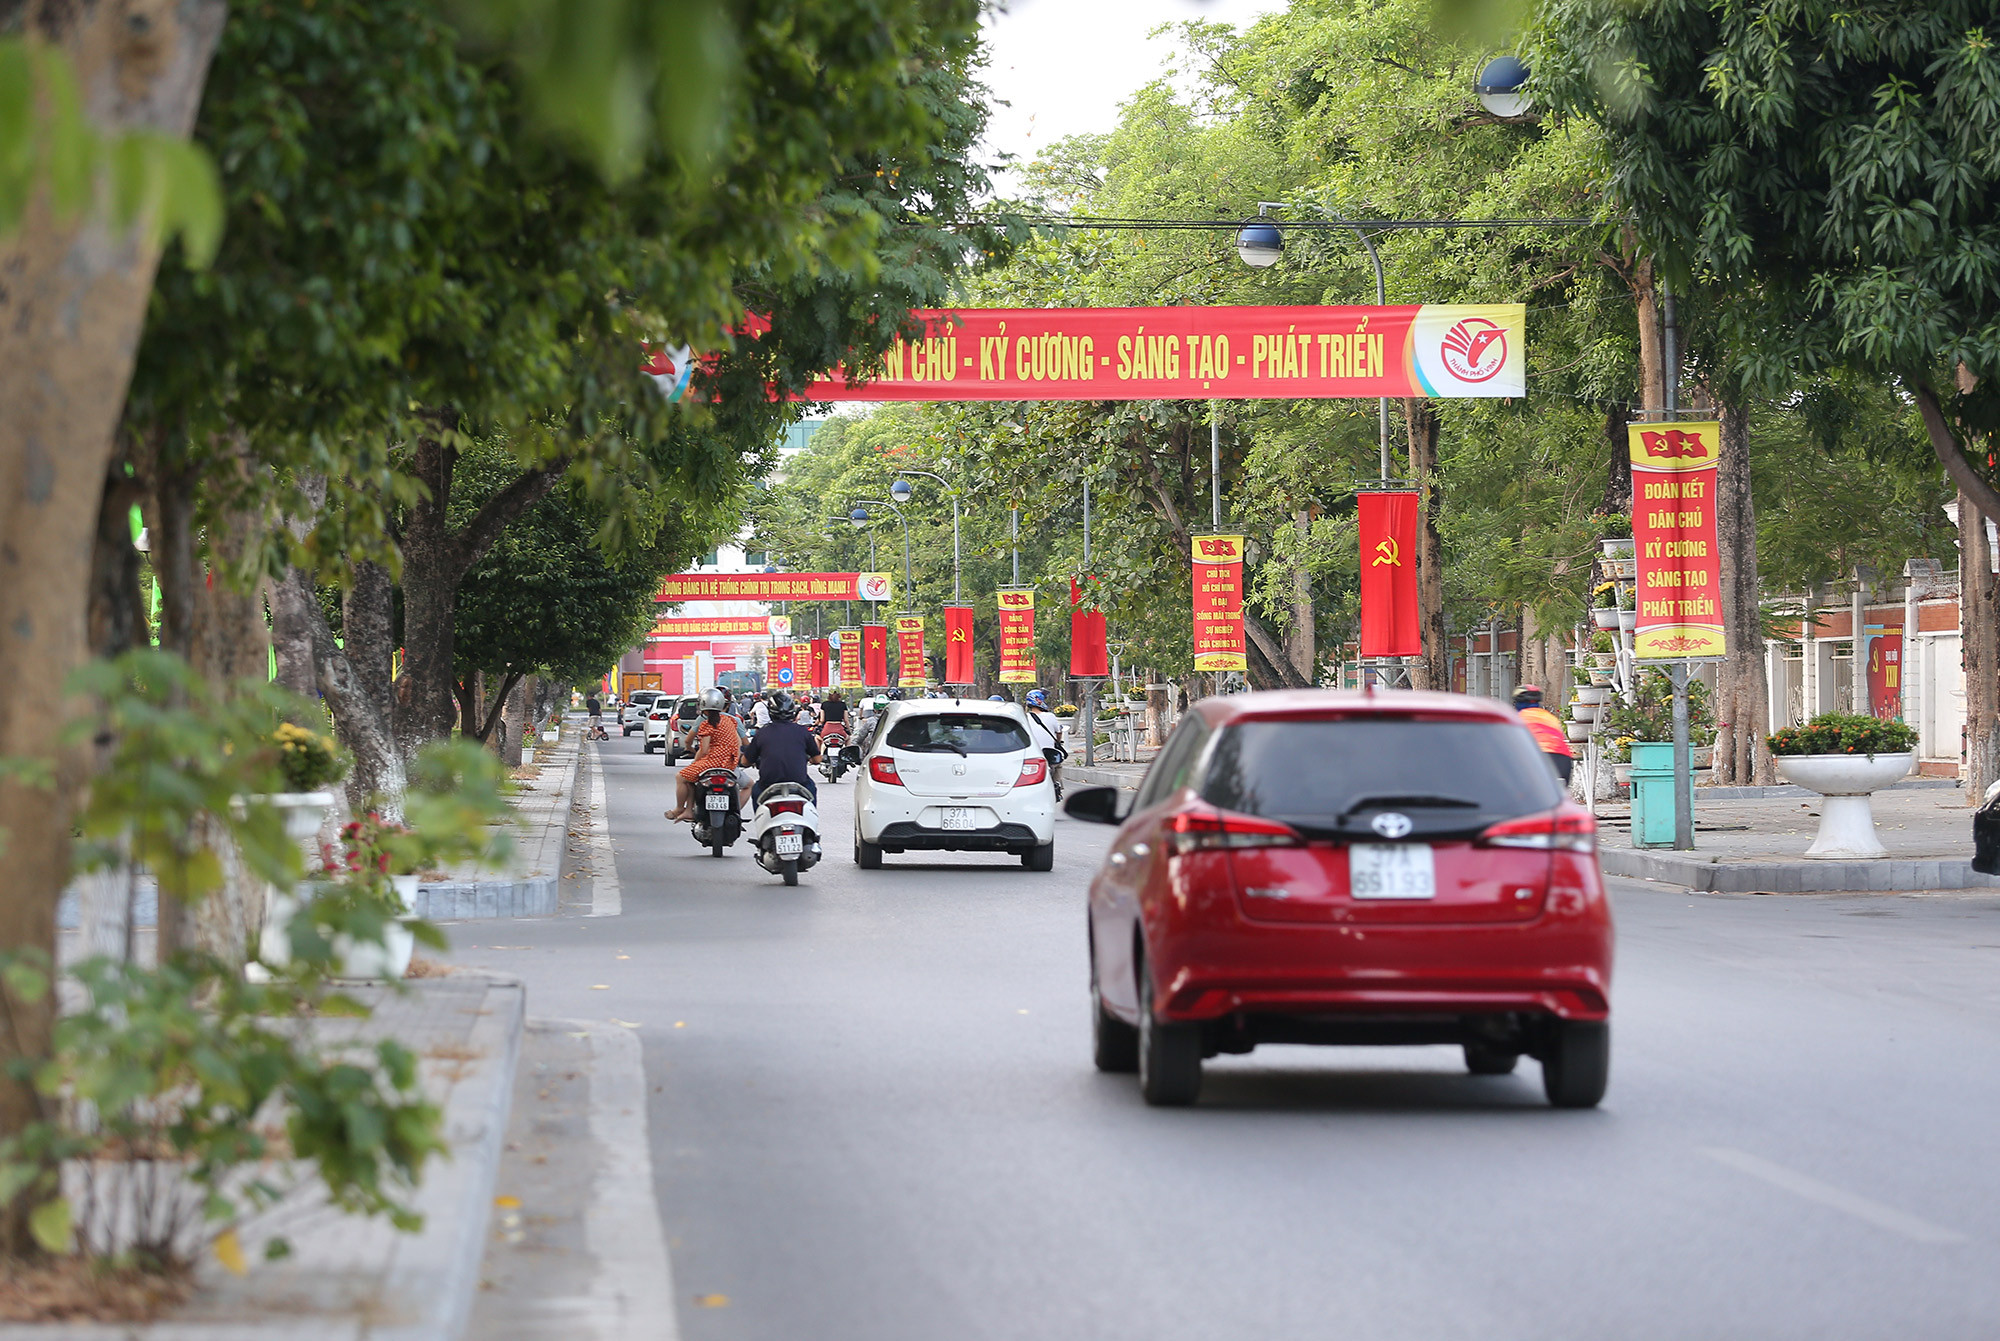 Thành phố Vinh trang hoàng các tuyến đường chào mừng đại hội lần thứ XXIV nhiệm kỳ 2020 - 2025. Ảnh: Lâm Tùng